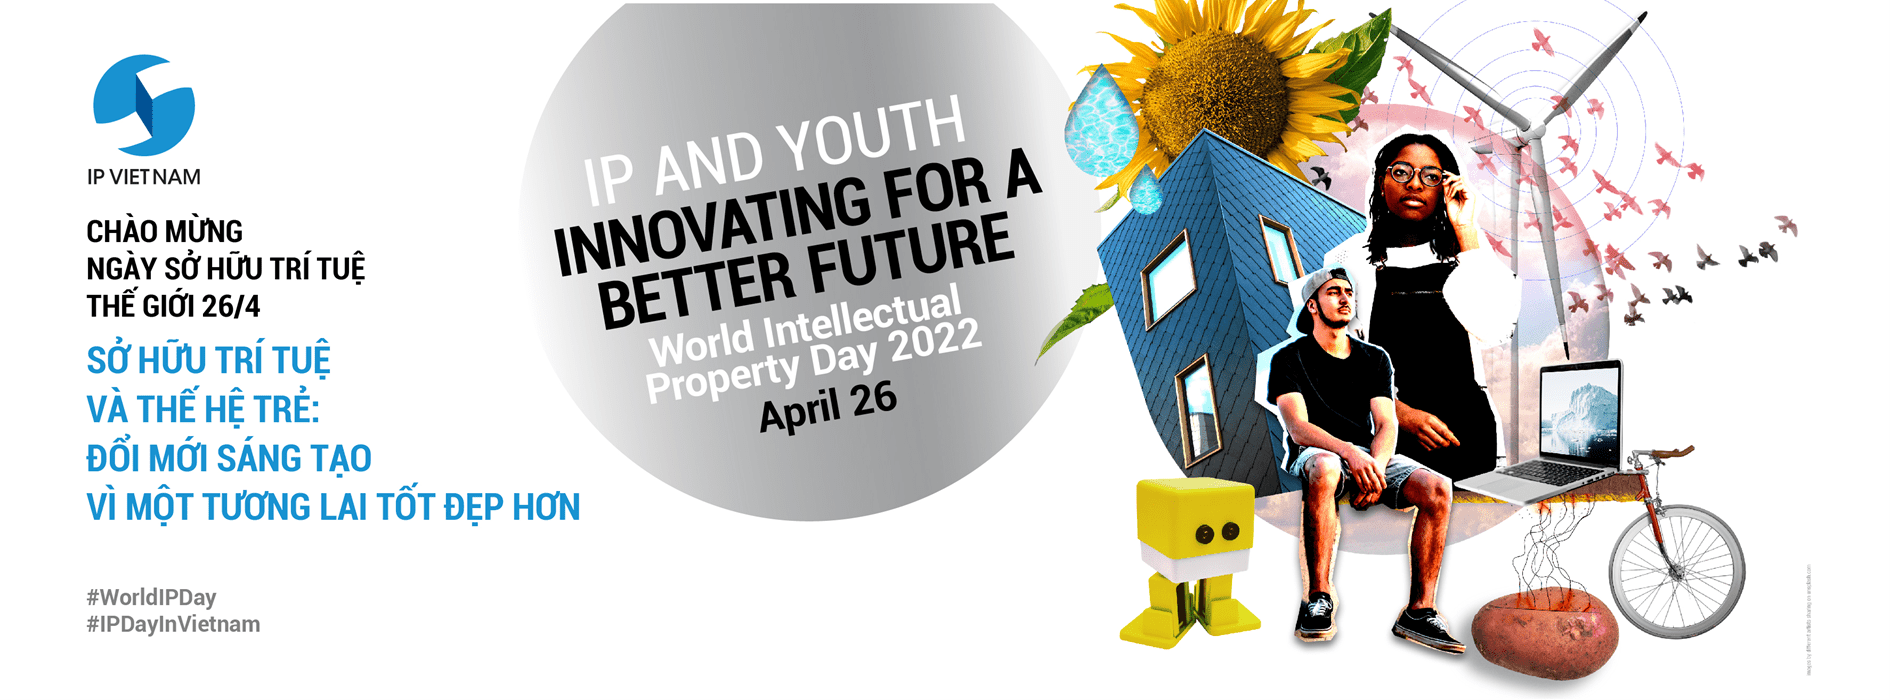 Sở hữu trí tuệ và Thế hệ trẻ: Đổi mới sáng tạo vì một tương lai tốt đẹp hơn -4